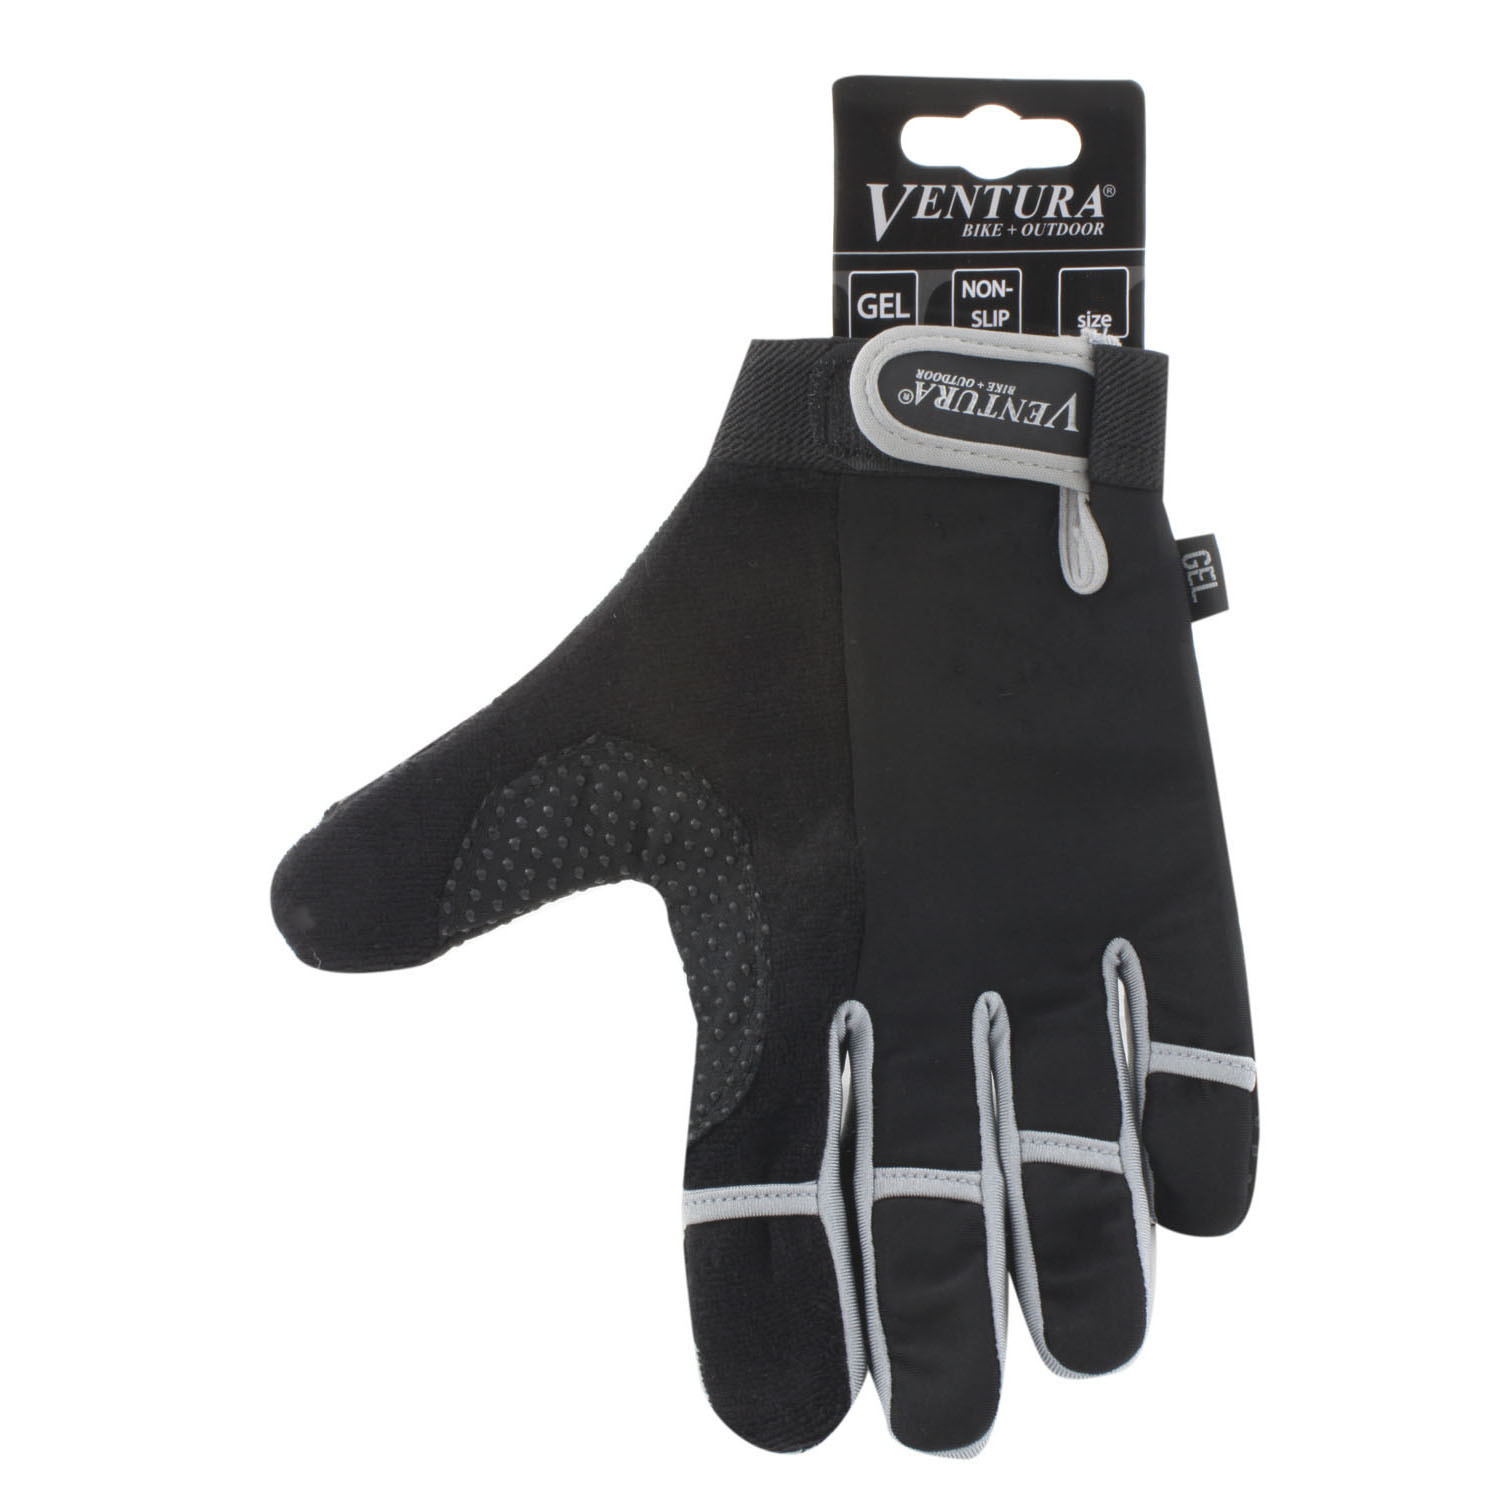 Ganz-Finger-Handschuh GEL Gr. XL farbig sortiert